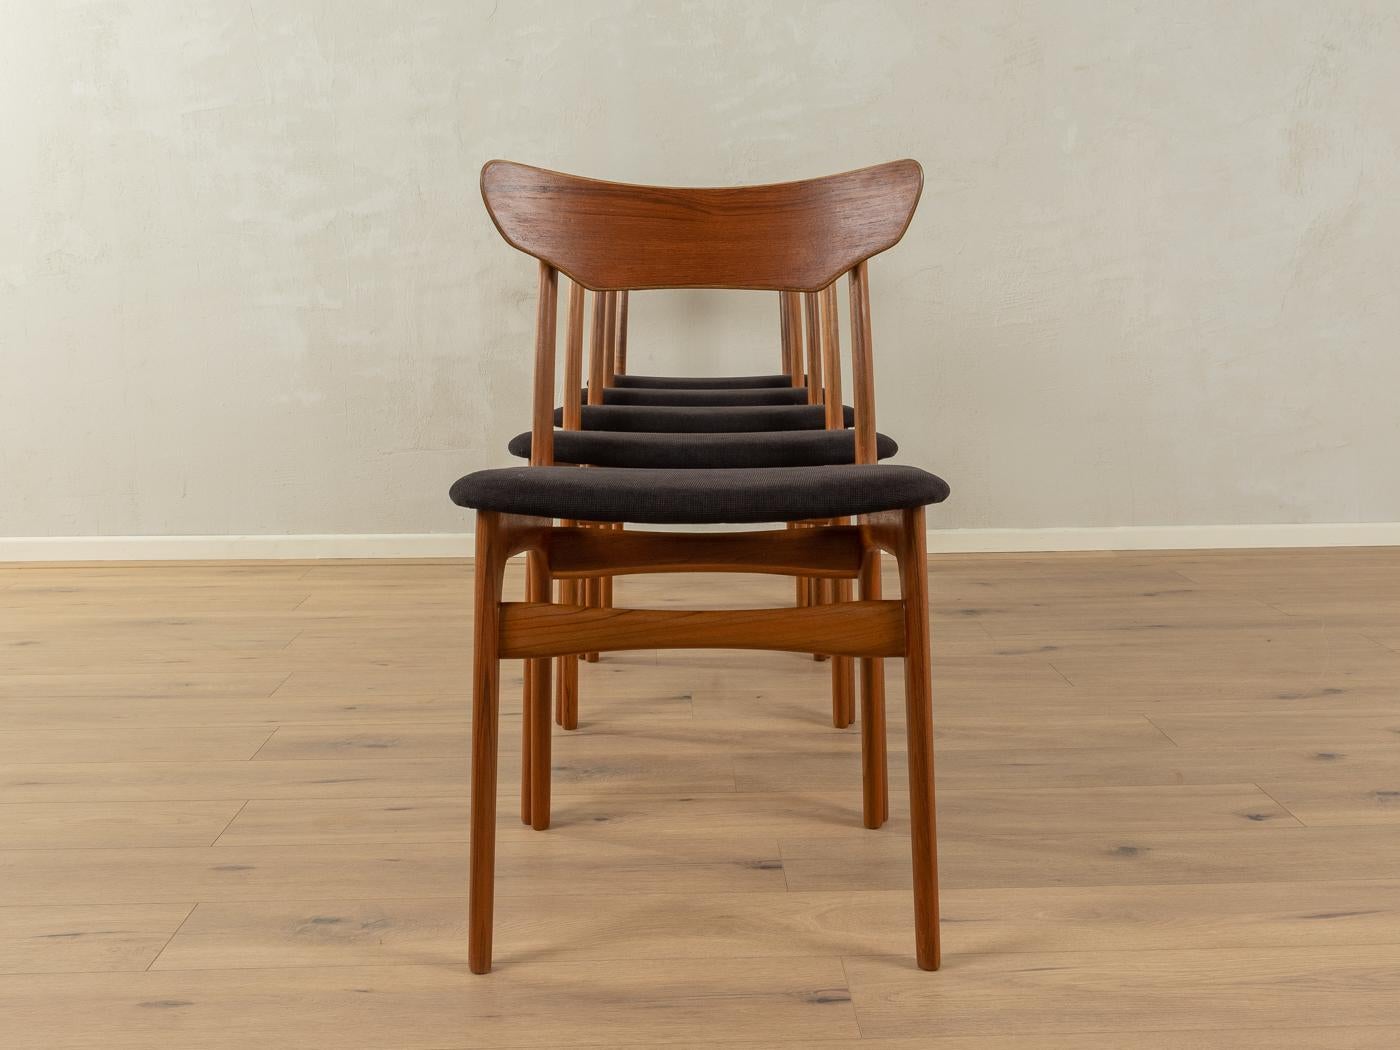 Elegante Stühle aus den 1960er Jahren von Schiønning & Elgaard für Randers Møbelfabrik. Rahmen aus massivem Teakholz. Die Stühle wurden neu gepolstert und mit einem hochwertigen Stoff in Schwarz bezogen. Das Angebot umfasst fünf